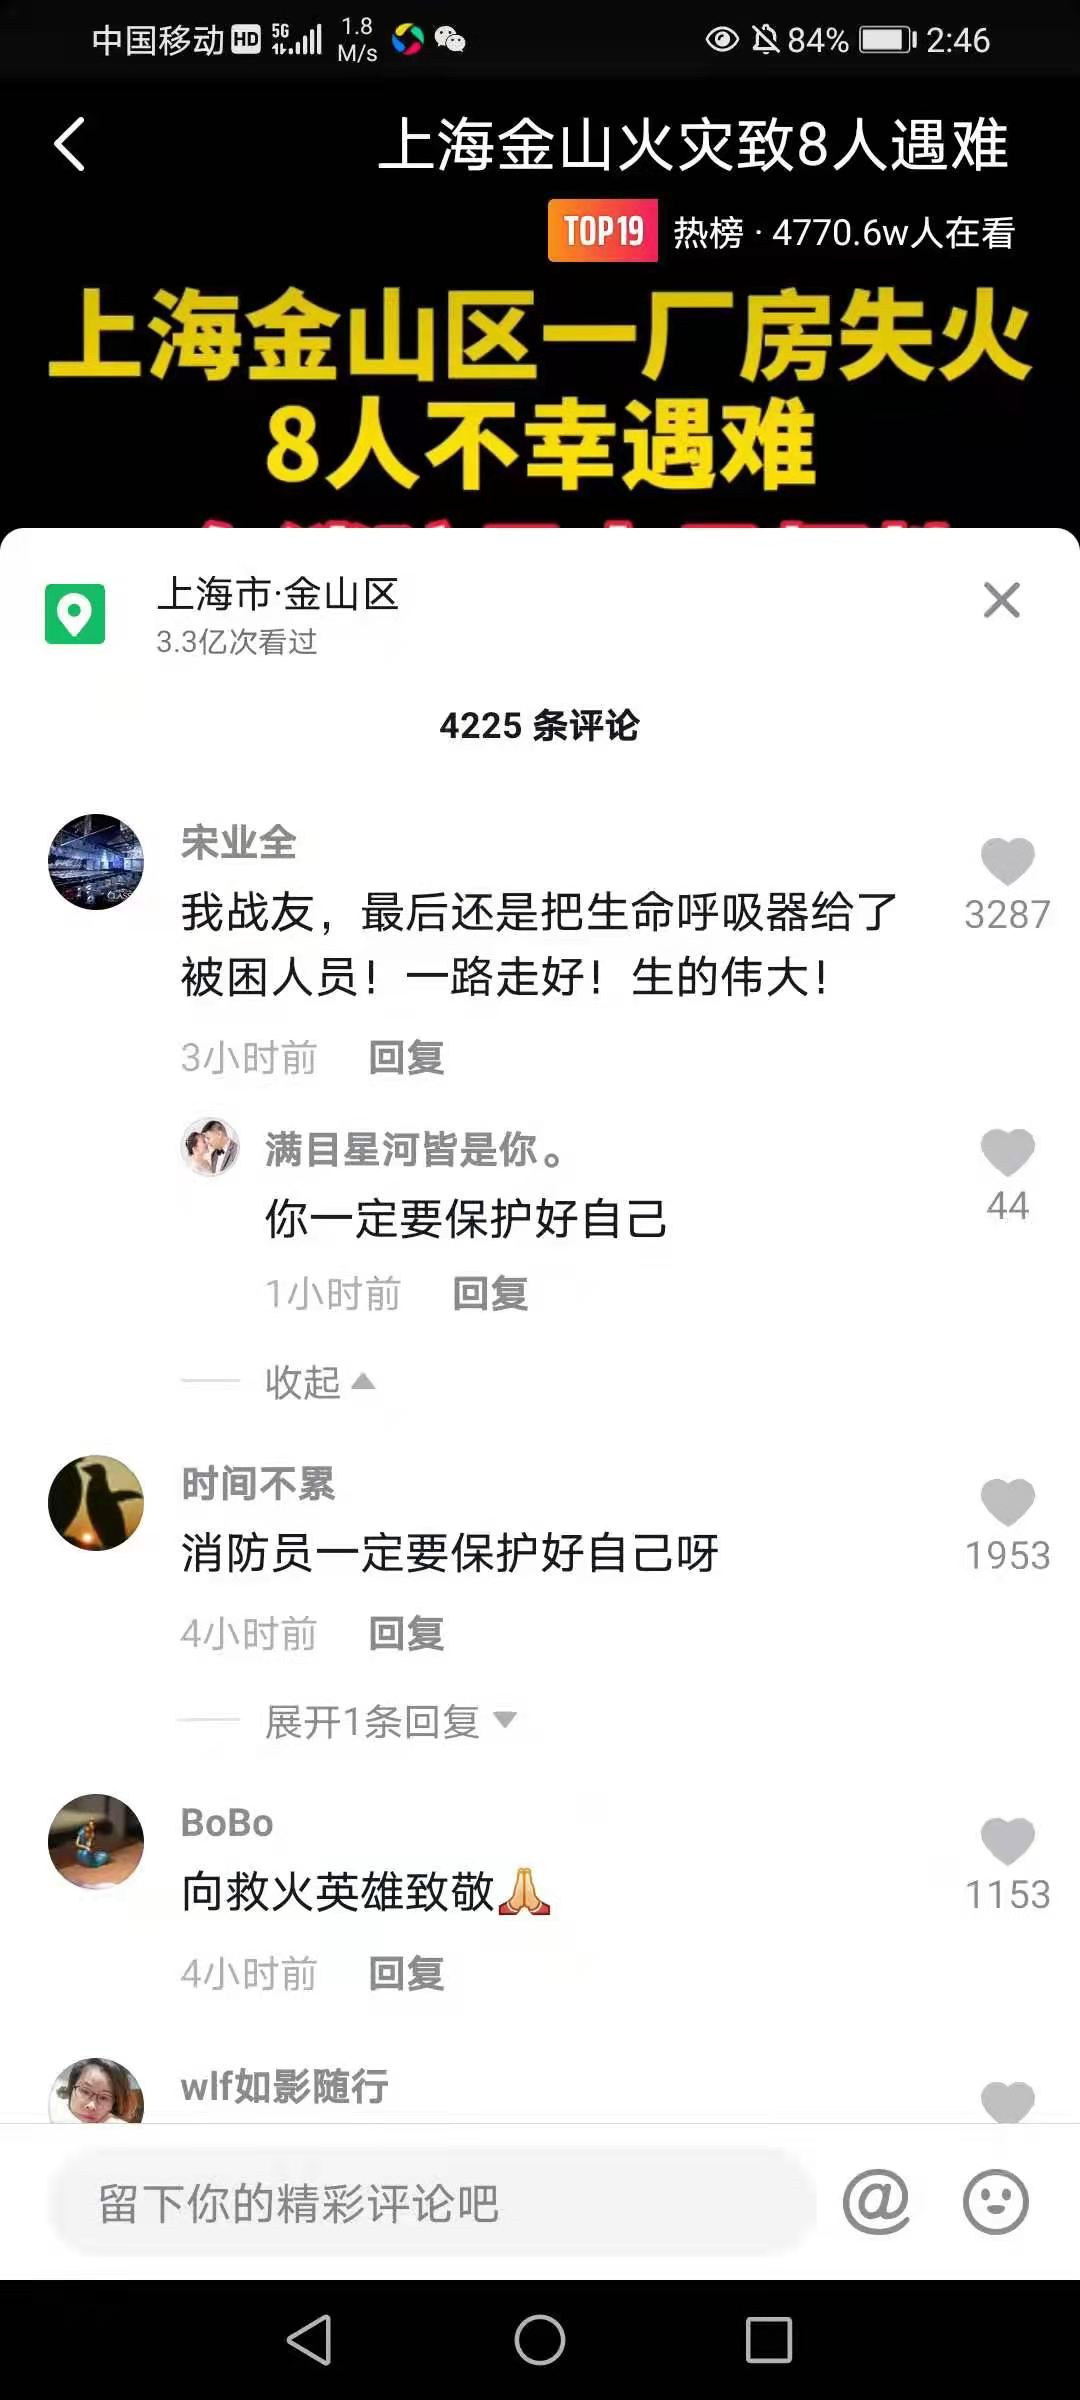 上海胜瑞电子科技有限公司发生火灾致8人死亡